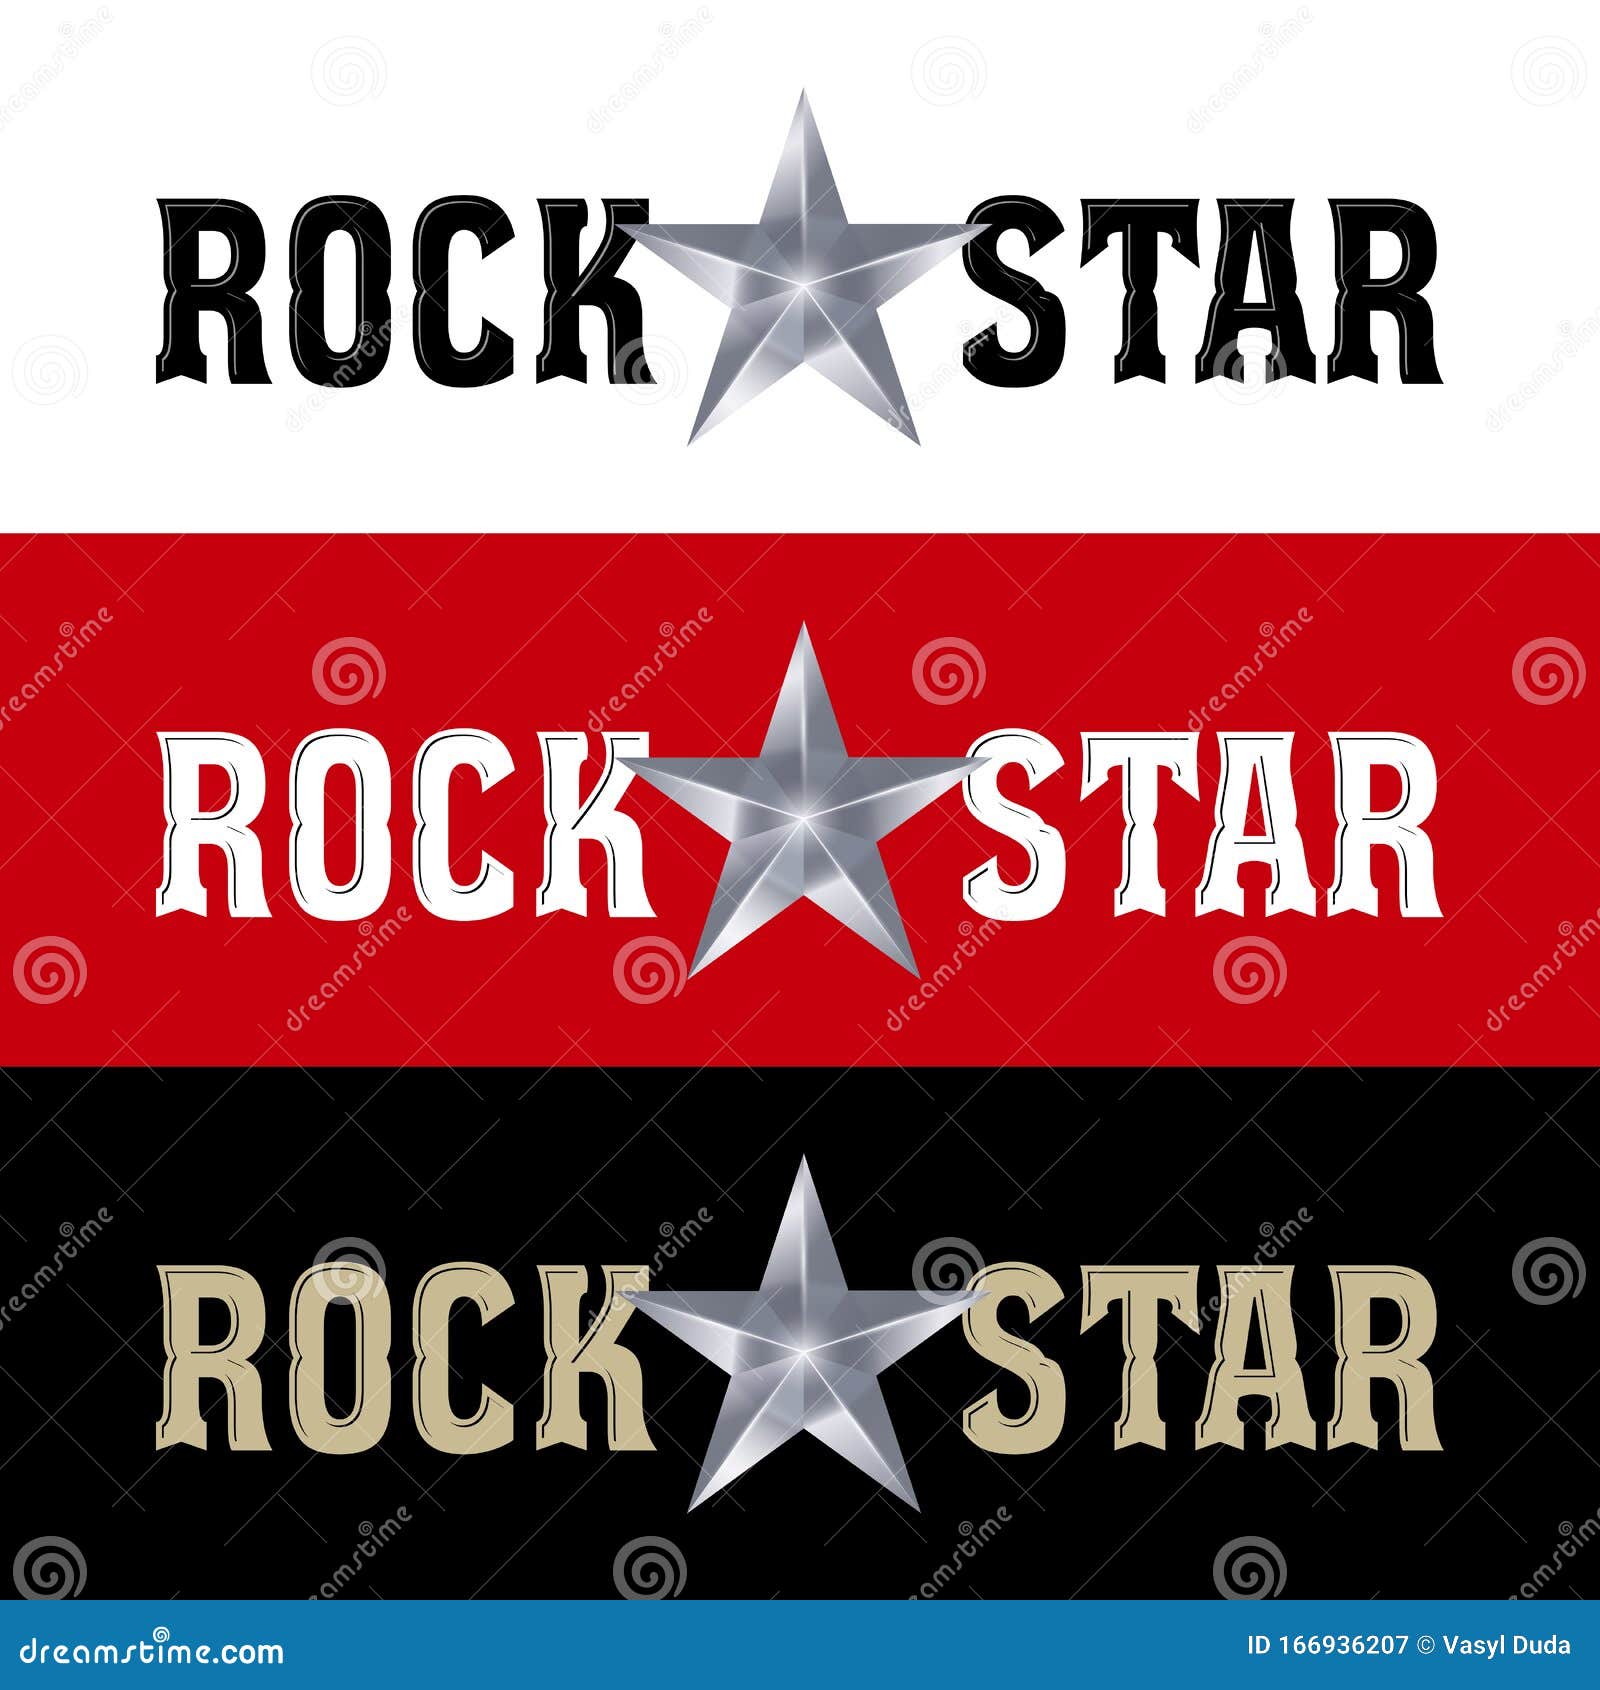 Từng nhịp điệu của phong cách Rock Star đầy cuốn hút sẽ làm bạn cảm thấy tưng bừng cuộc sống. Hãy xem những hình ảnh về những ngôi sao Rock Star để được đắm chìm trong không gian âm nhạc sôi động này!